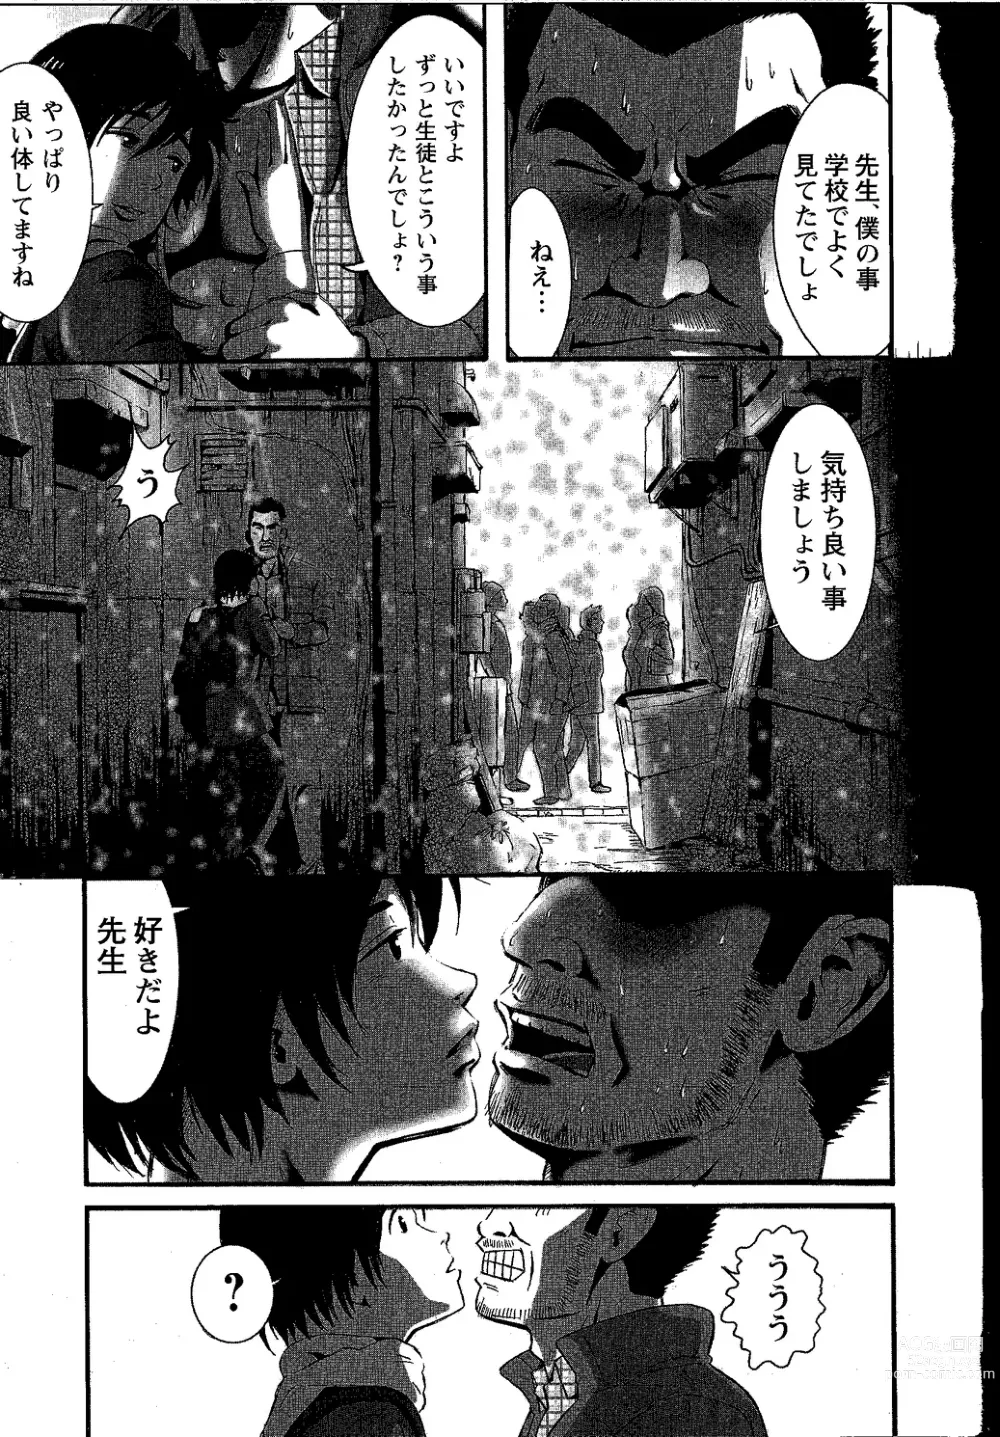 Page 11 of manga Tsubasa o Kudasai.